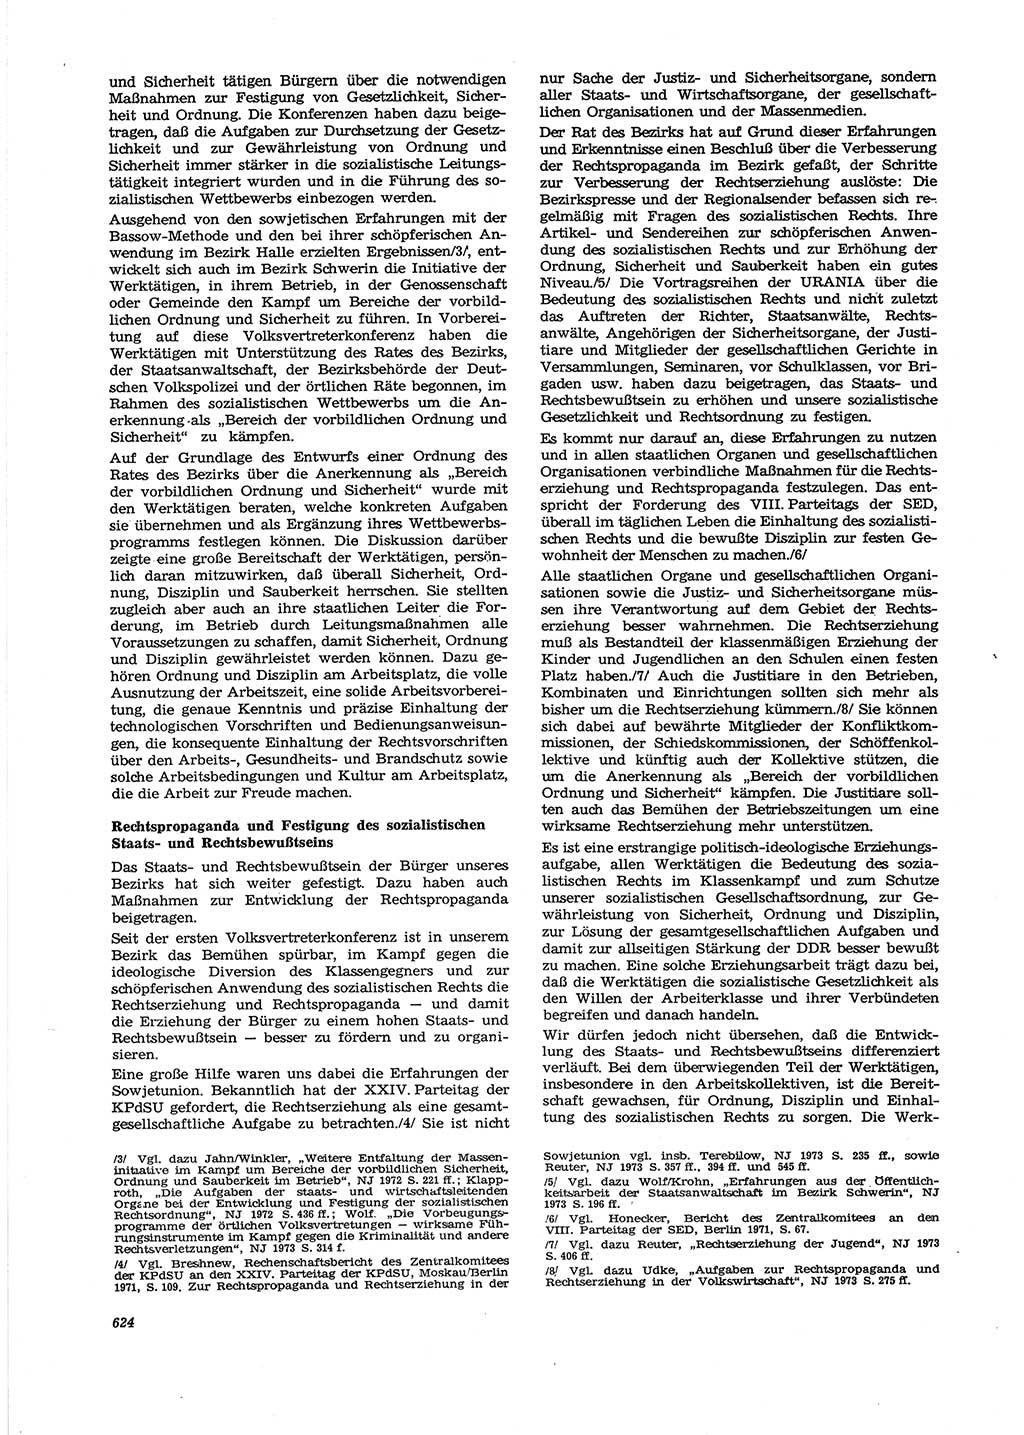 Neue Justiz (NJ), Zeitschrift für Recht und Rechtswissenschaft [Deutsche Demokratische Republik (DDR)], 27. Jahrgang 1973, Seite 624 (NJ DDR 1973, S. 624)